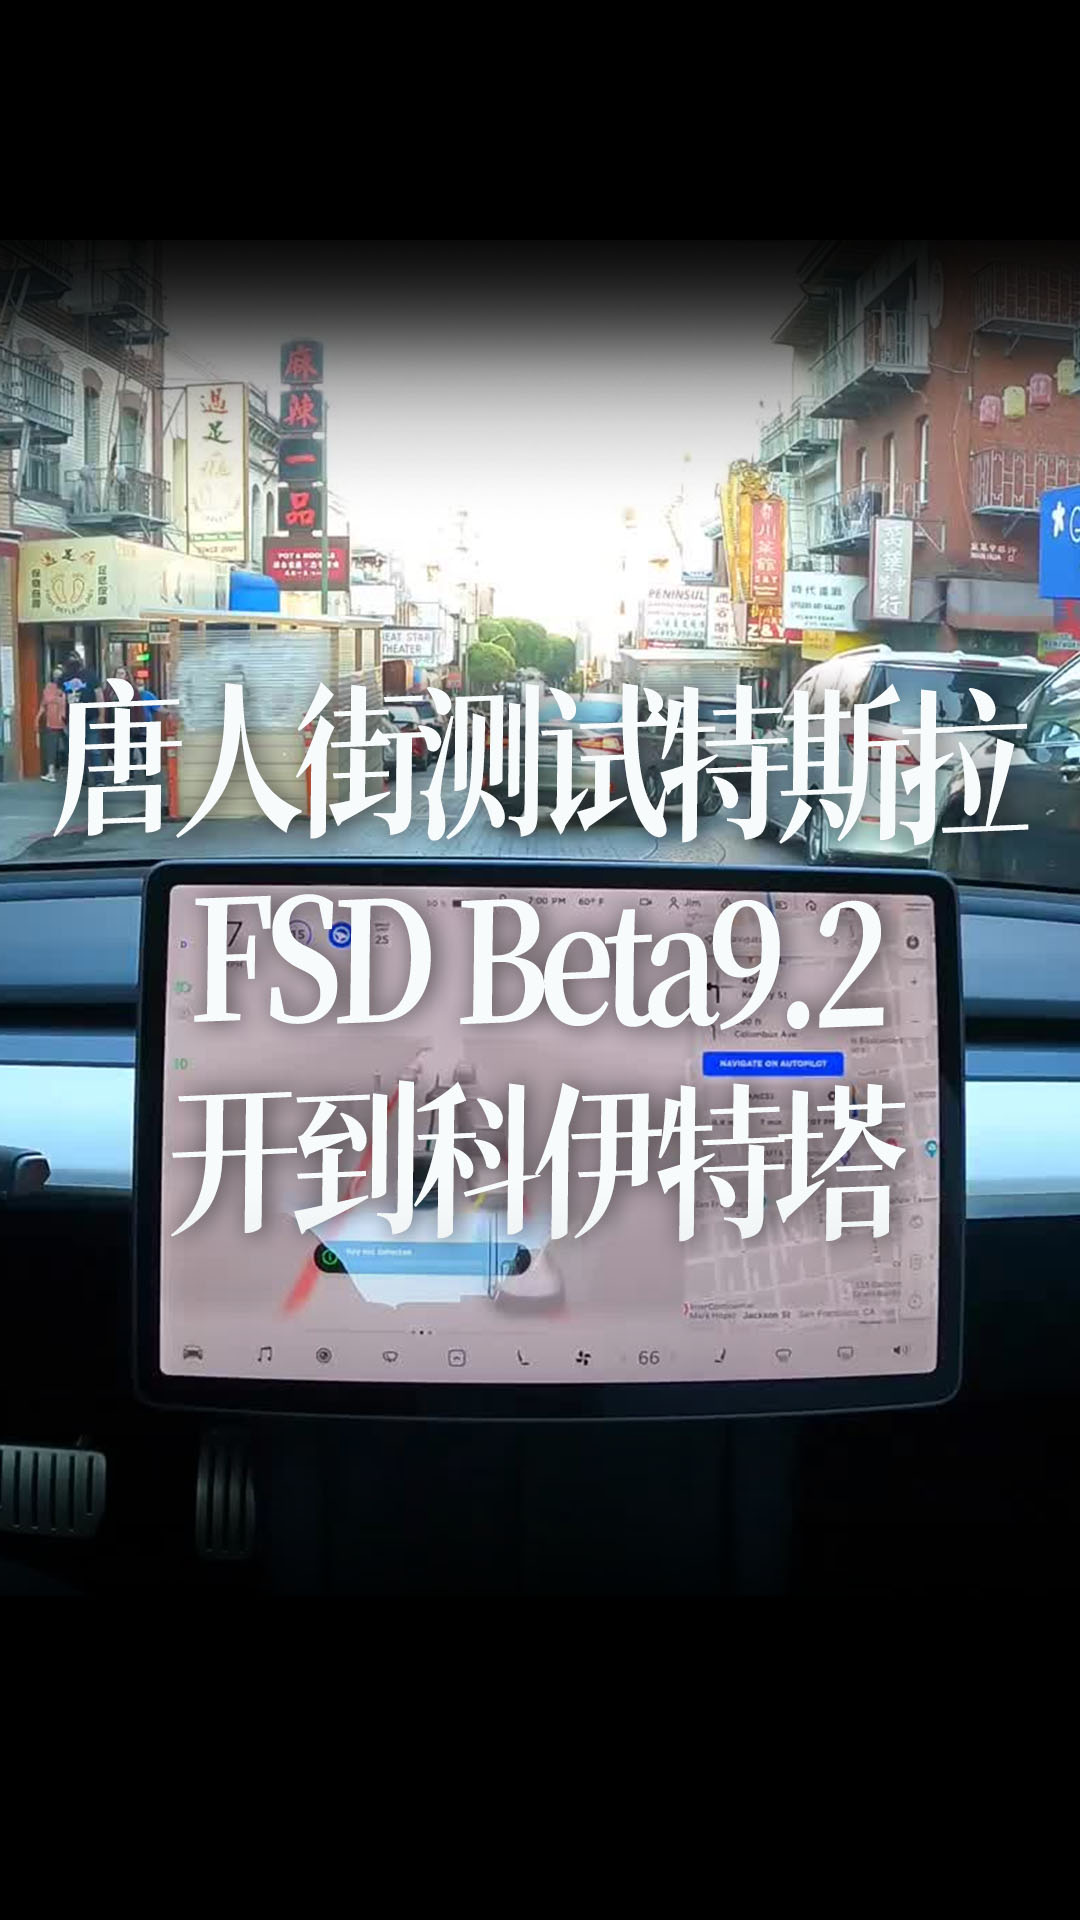 旧金山唐人街测试特斯拉自动驾驶FSD Beta9.2，开到科伊特塔